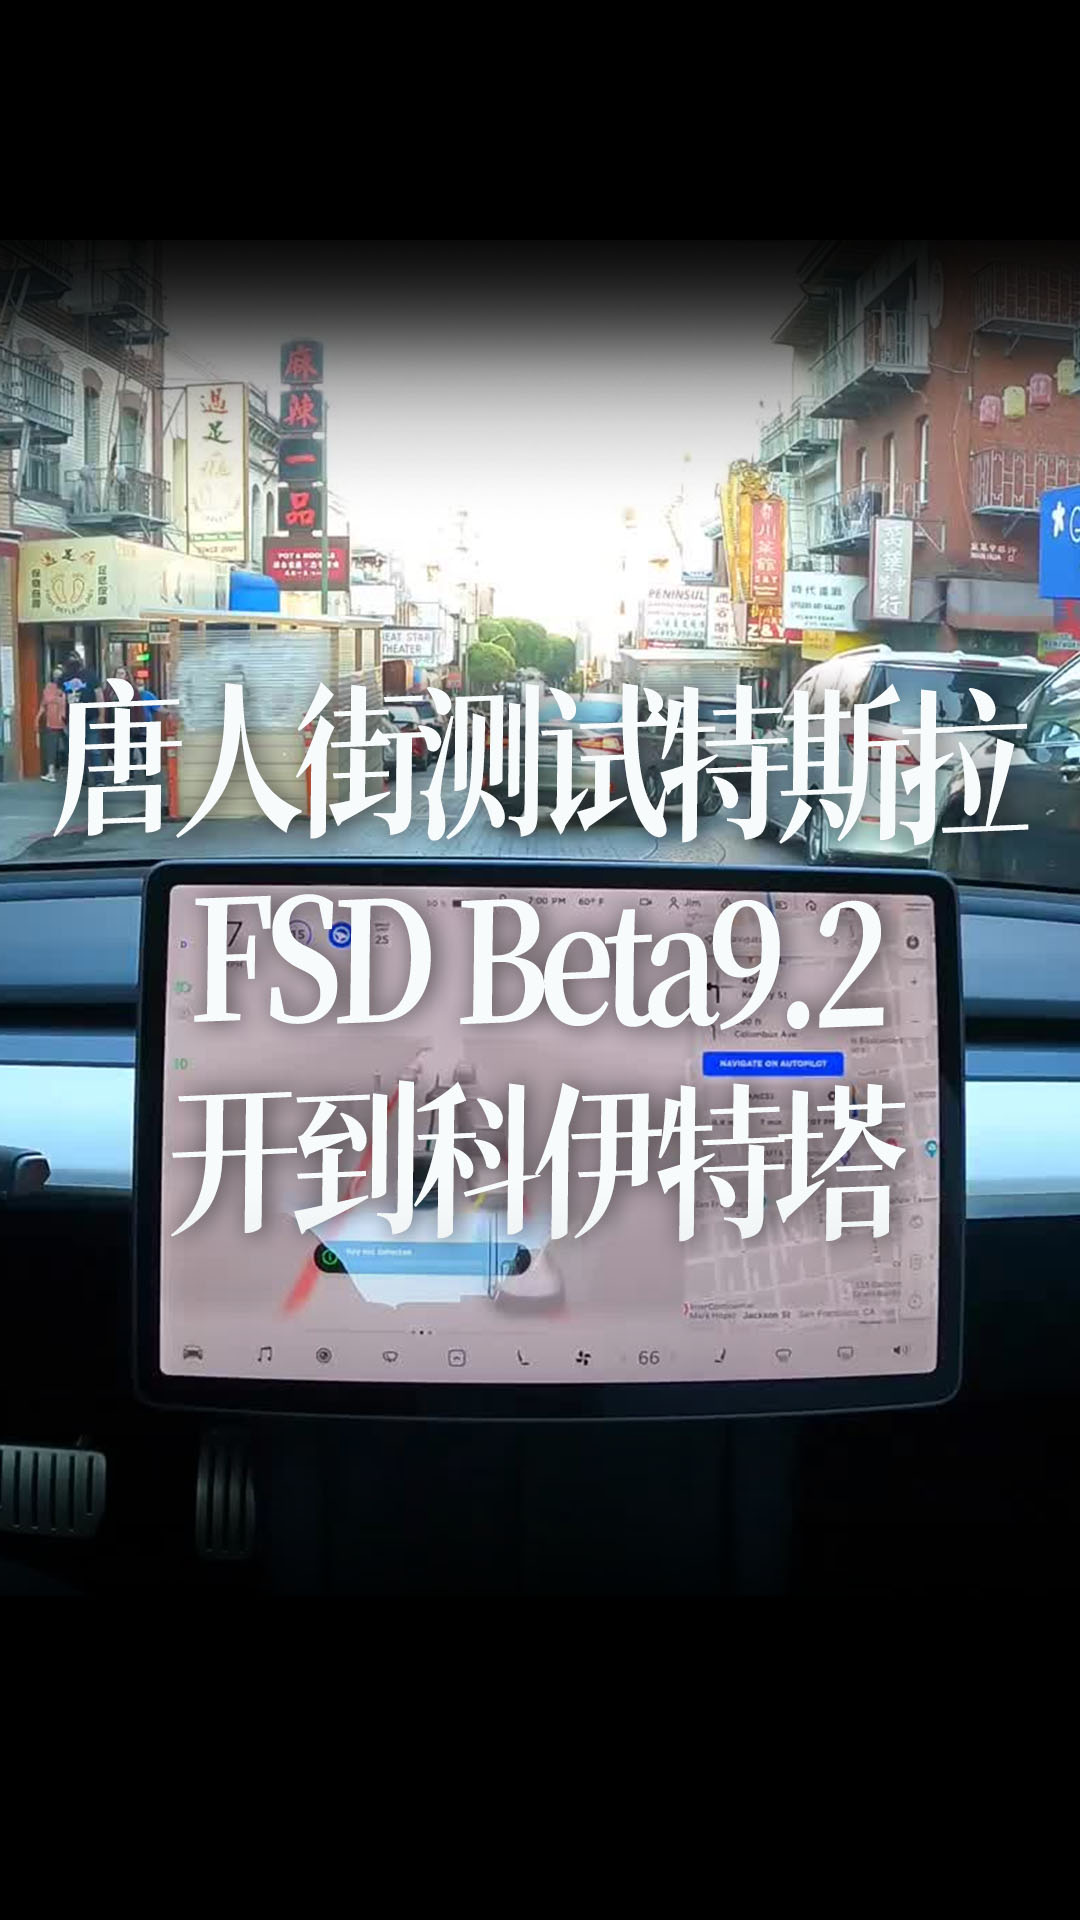 旧金山唐人街测试特斯拉自动驾驶FSD Beta9.2，开到科伊特塔